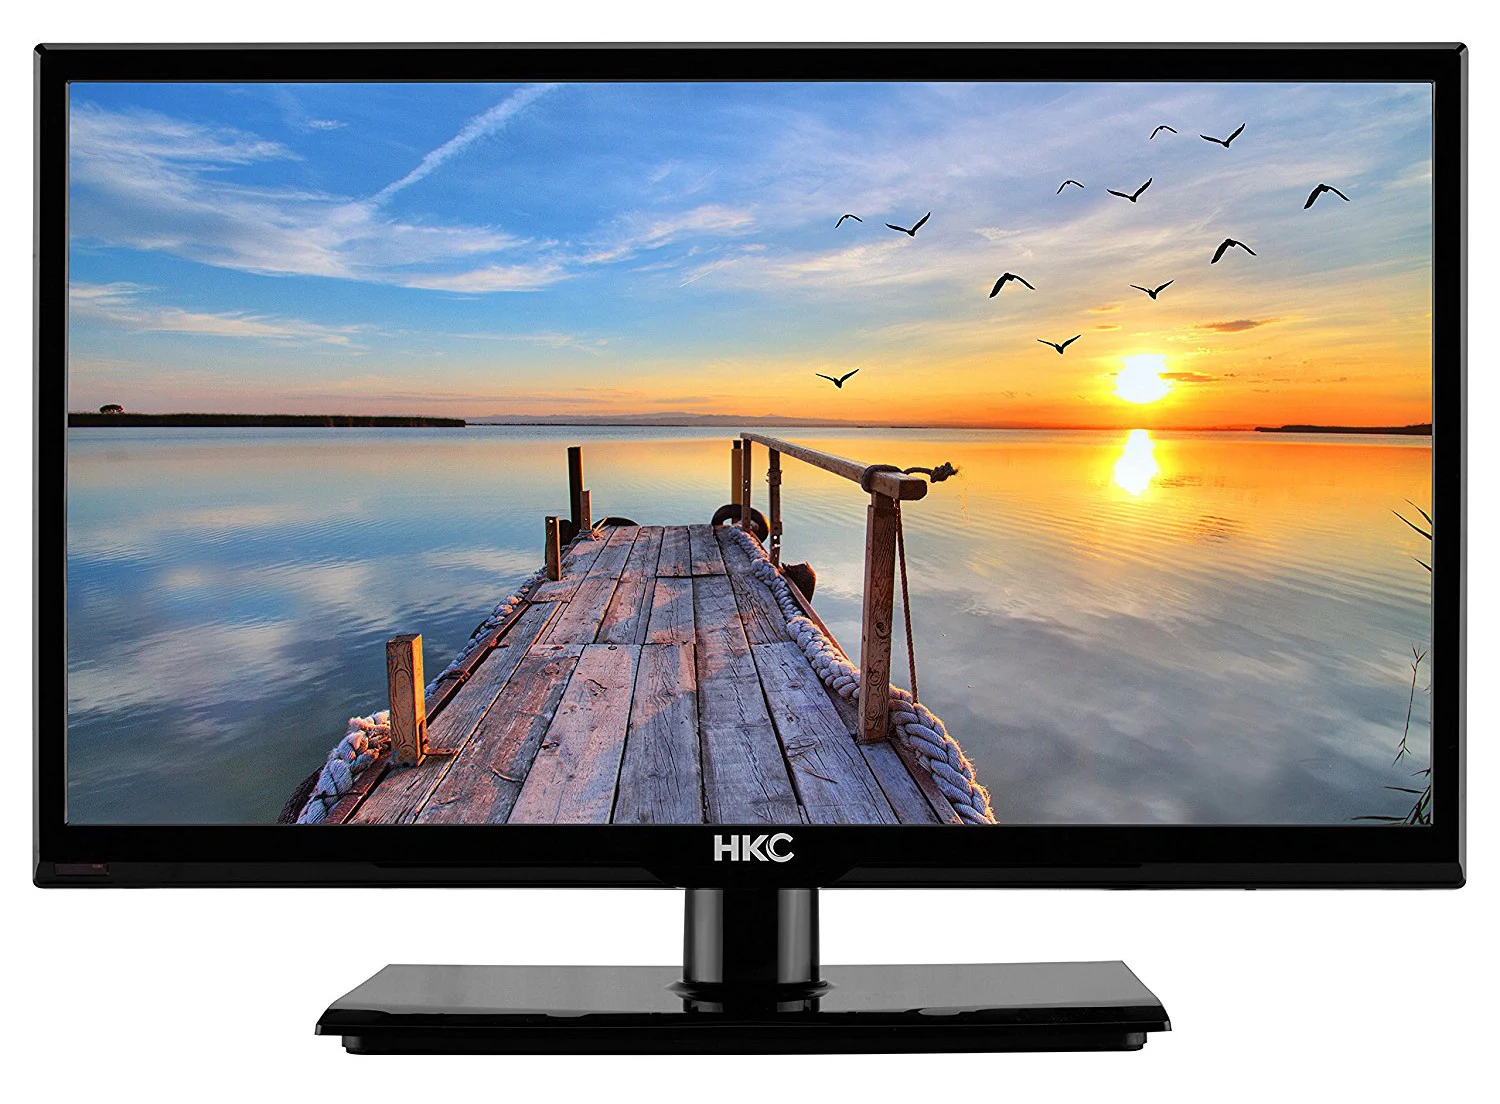 HKC 20C1NB 20” LED TV ( Full-HD 1920X1080